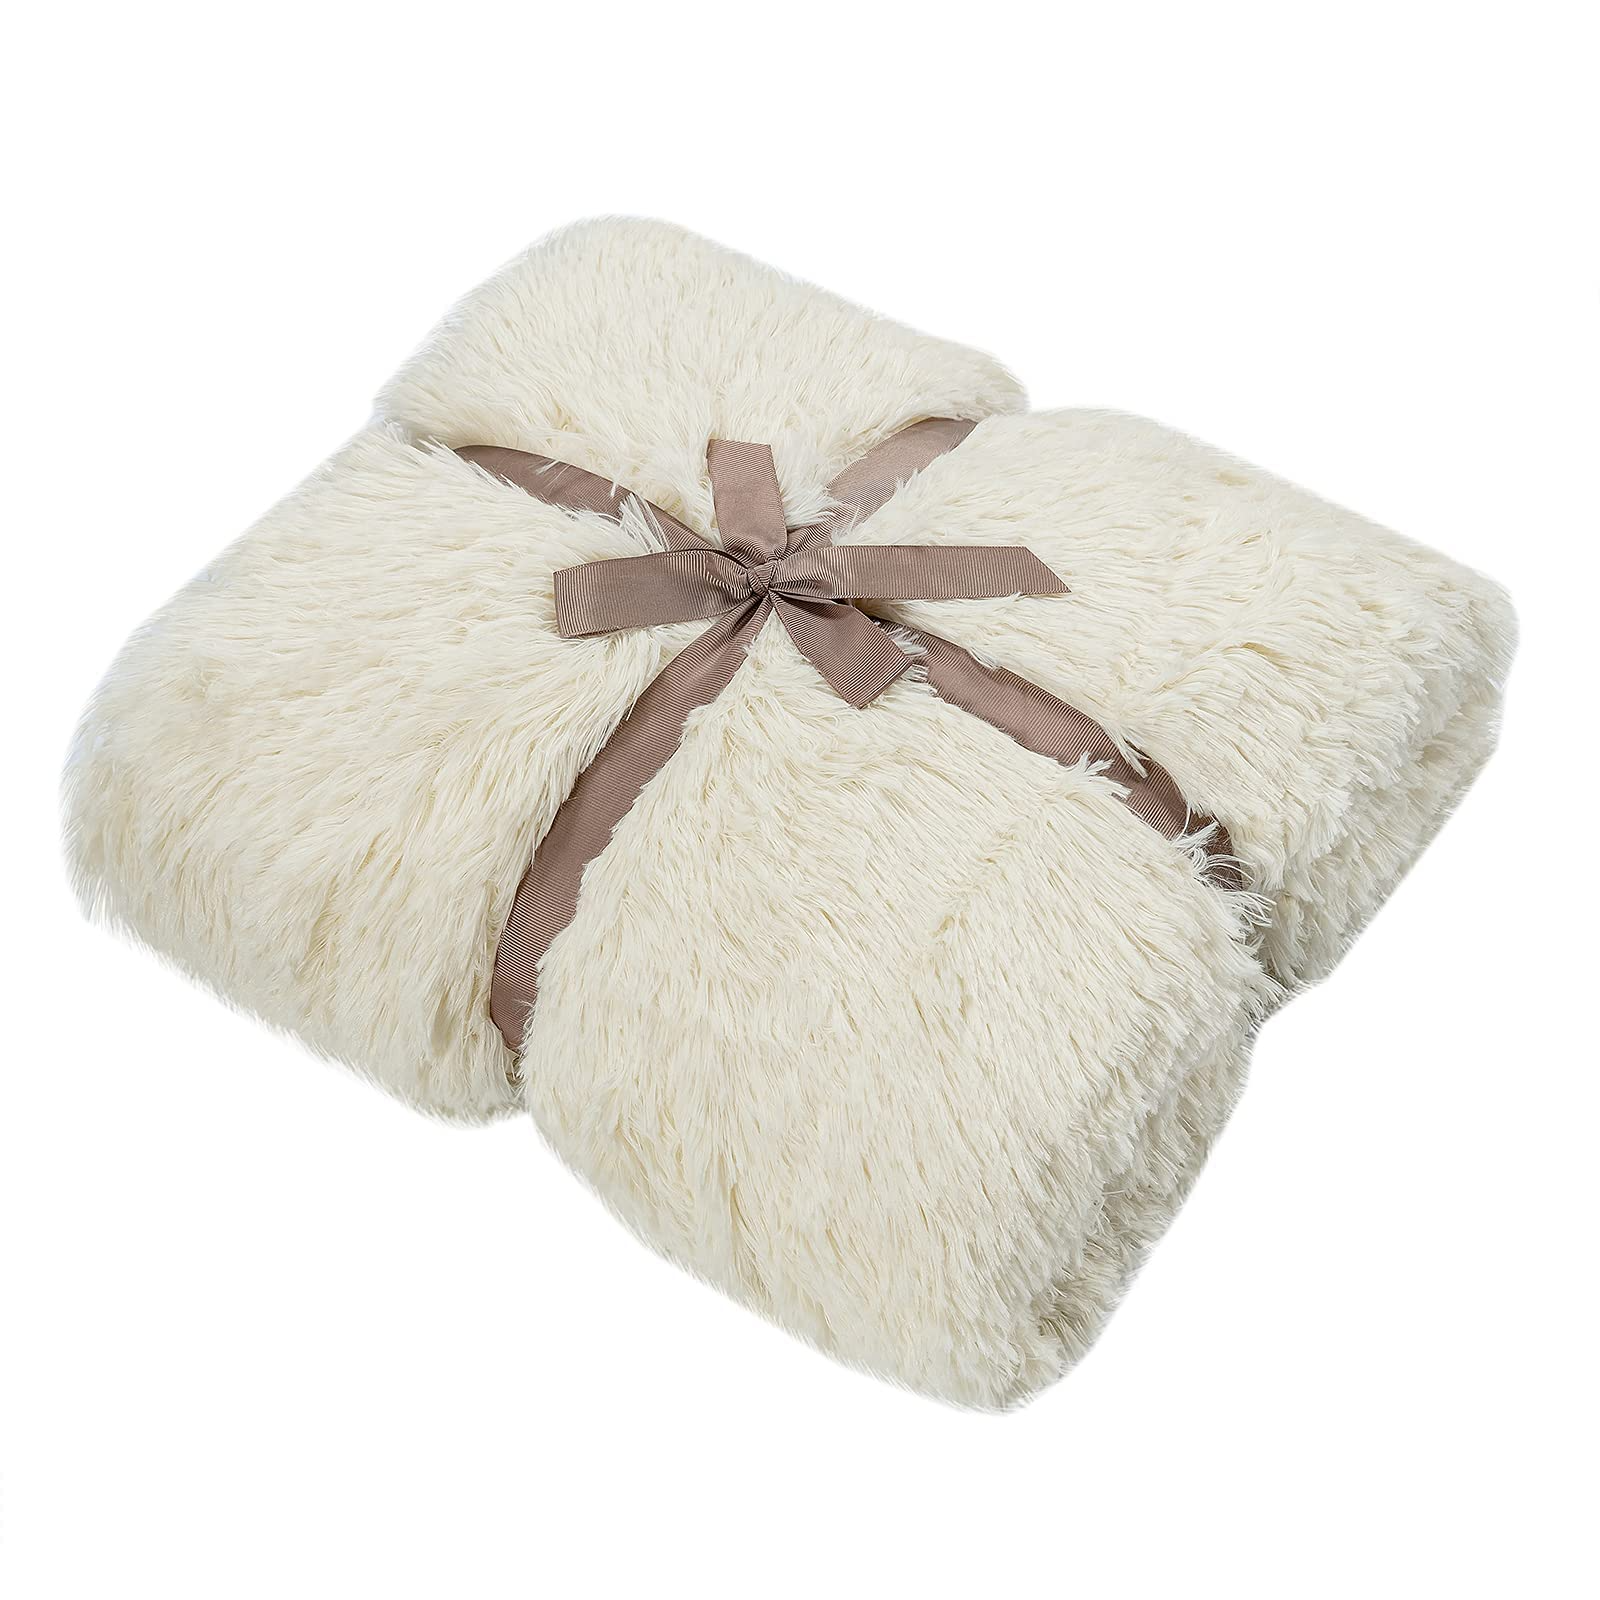 Giantex Reversible Soft Fur Blanket, Oversized Fluffy Throw Blanket